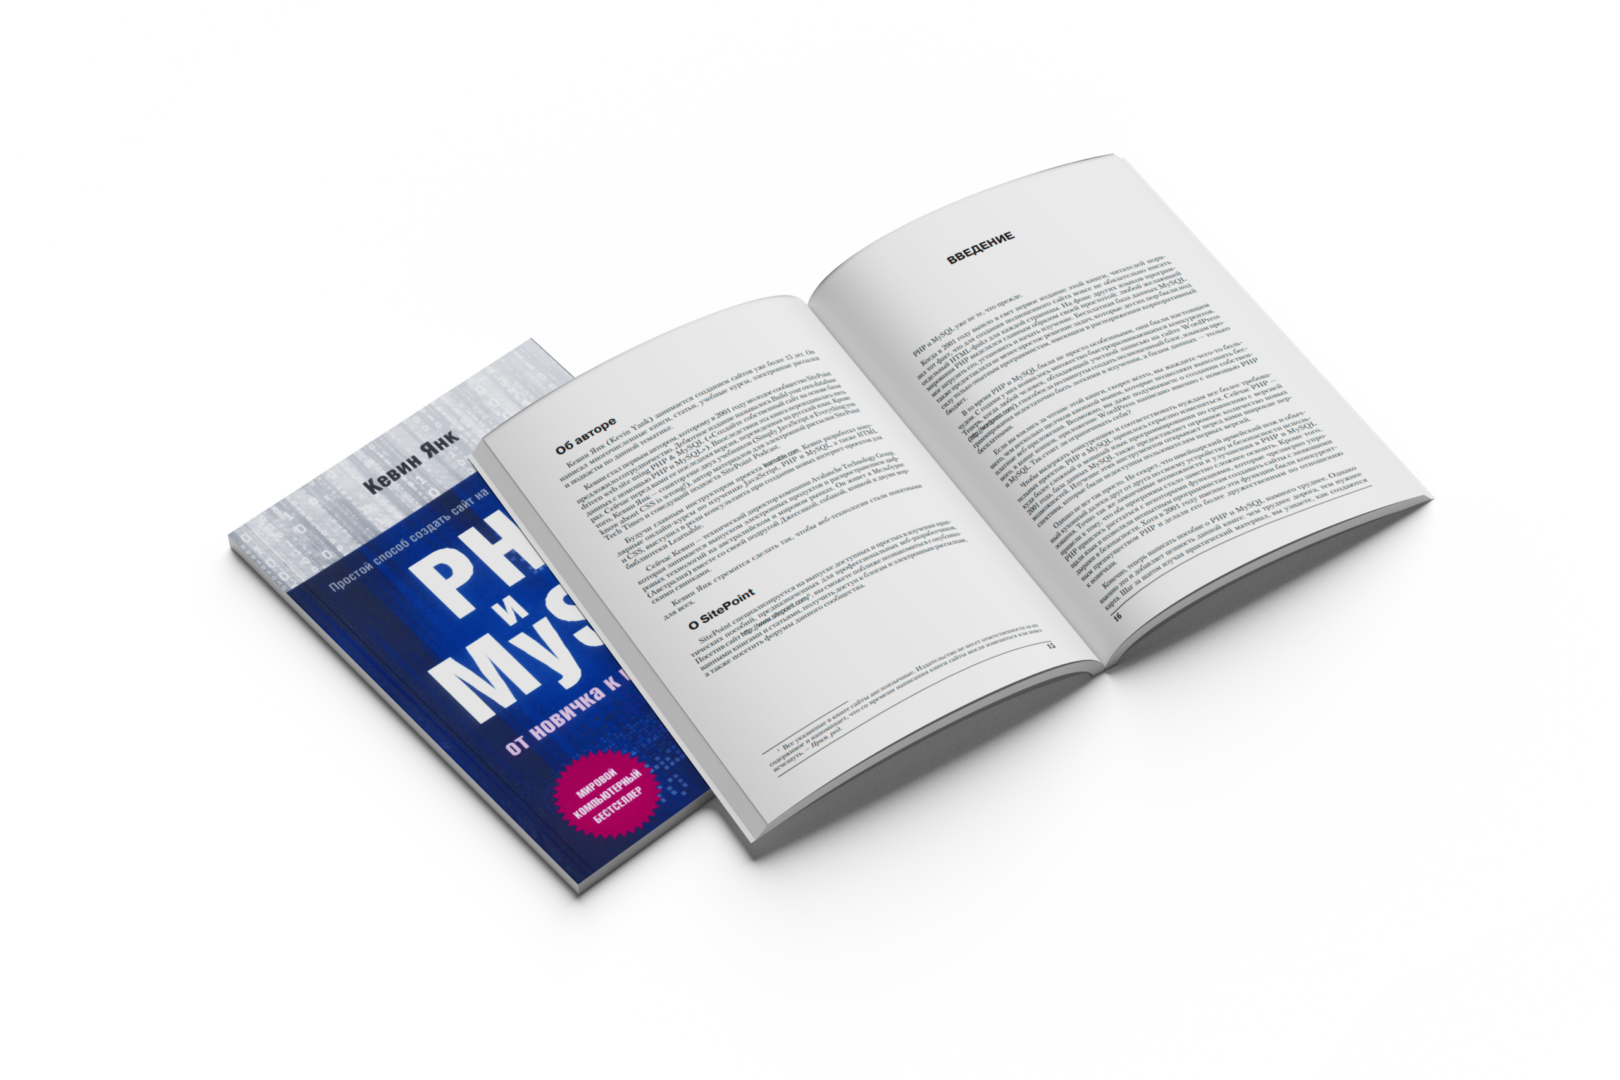 ТОП-7 книг з PHP російською: добірка для самостійного вивчення мови з нуля